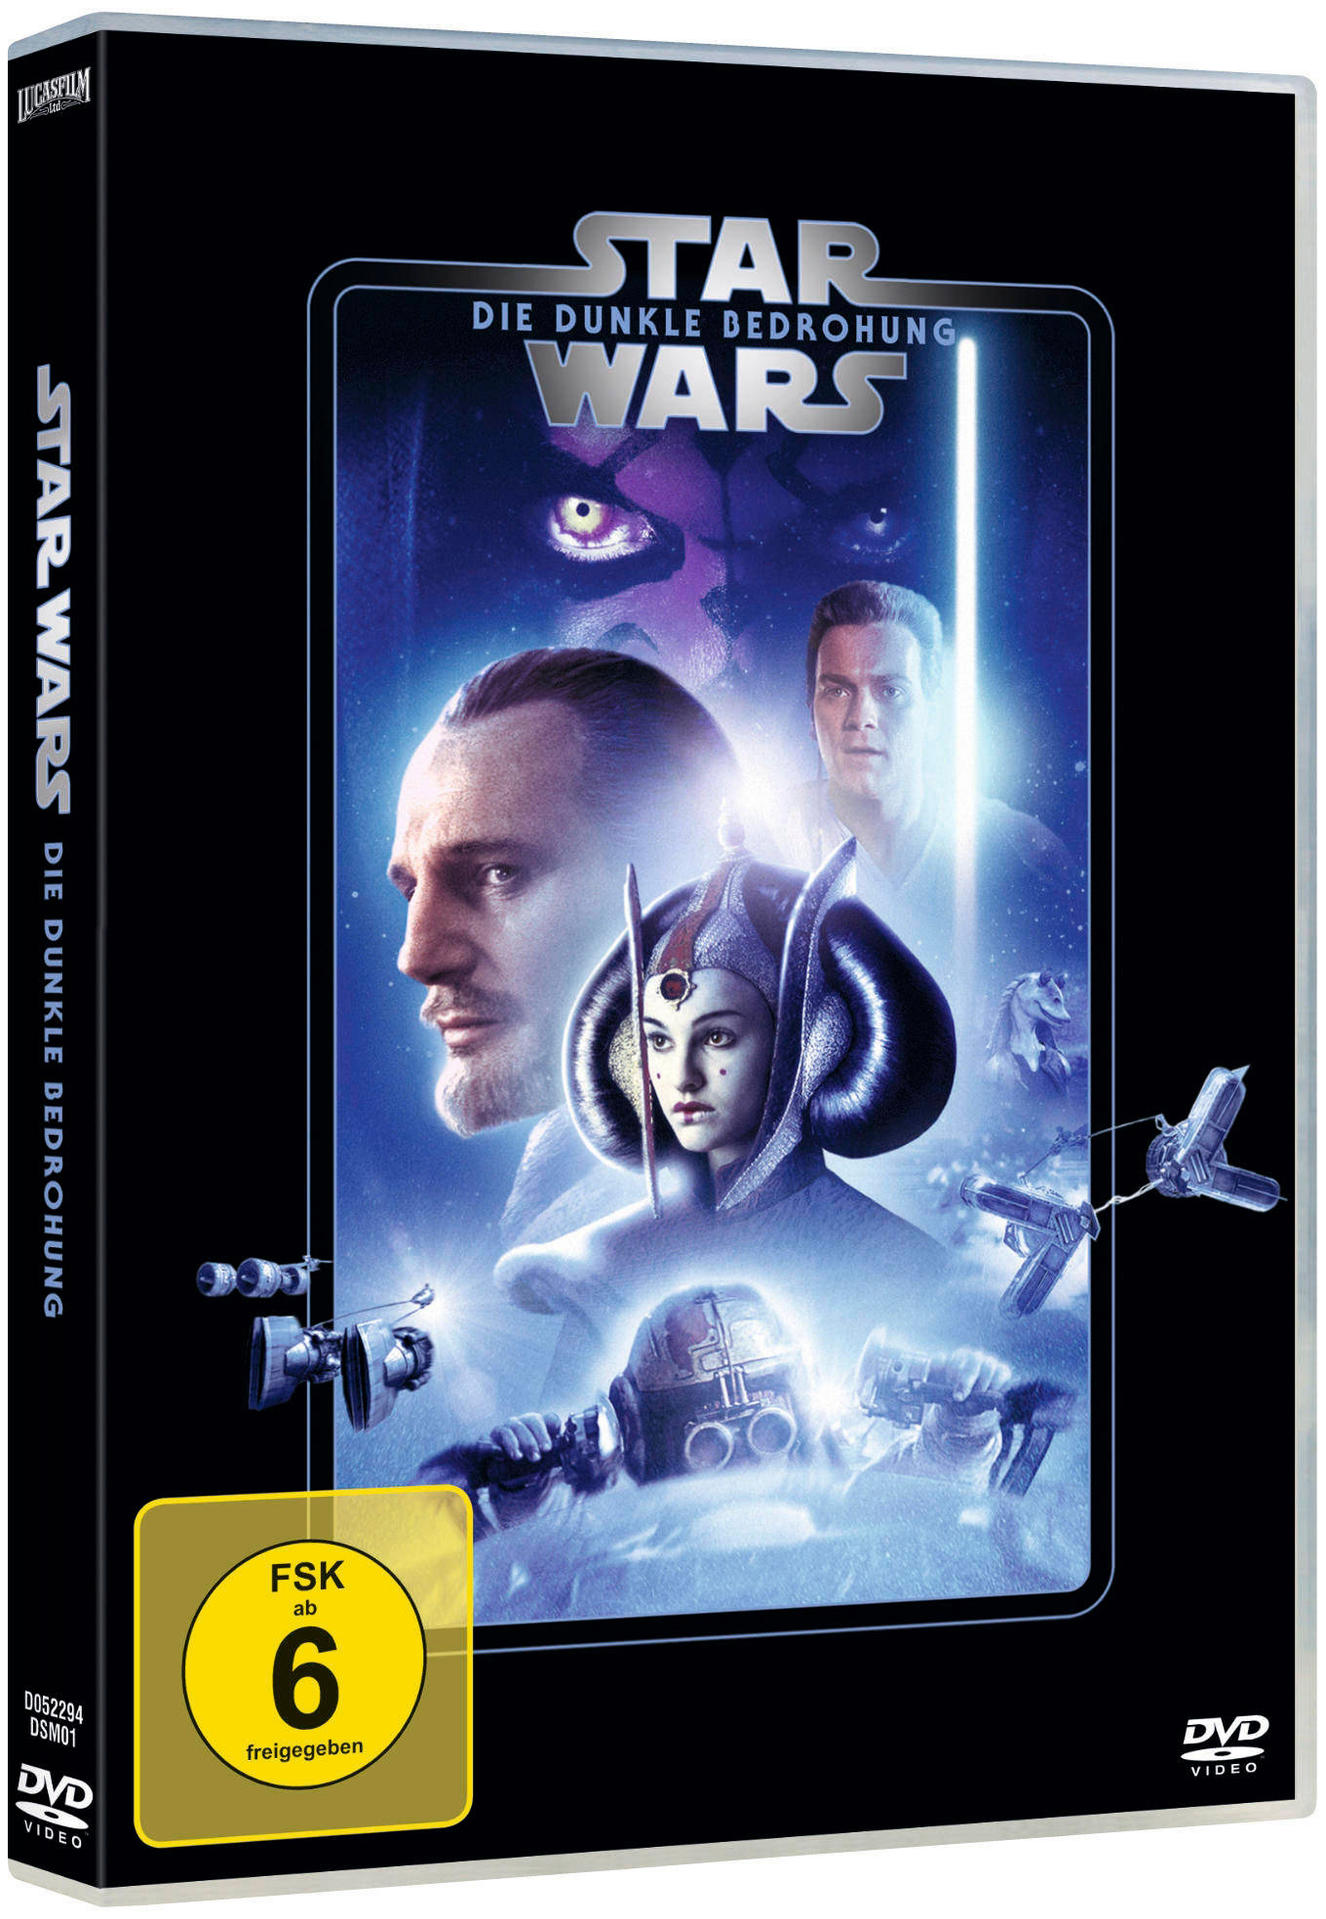 Star Wars: Episode I - dunkle Bedrohung Die DVD